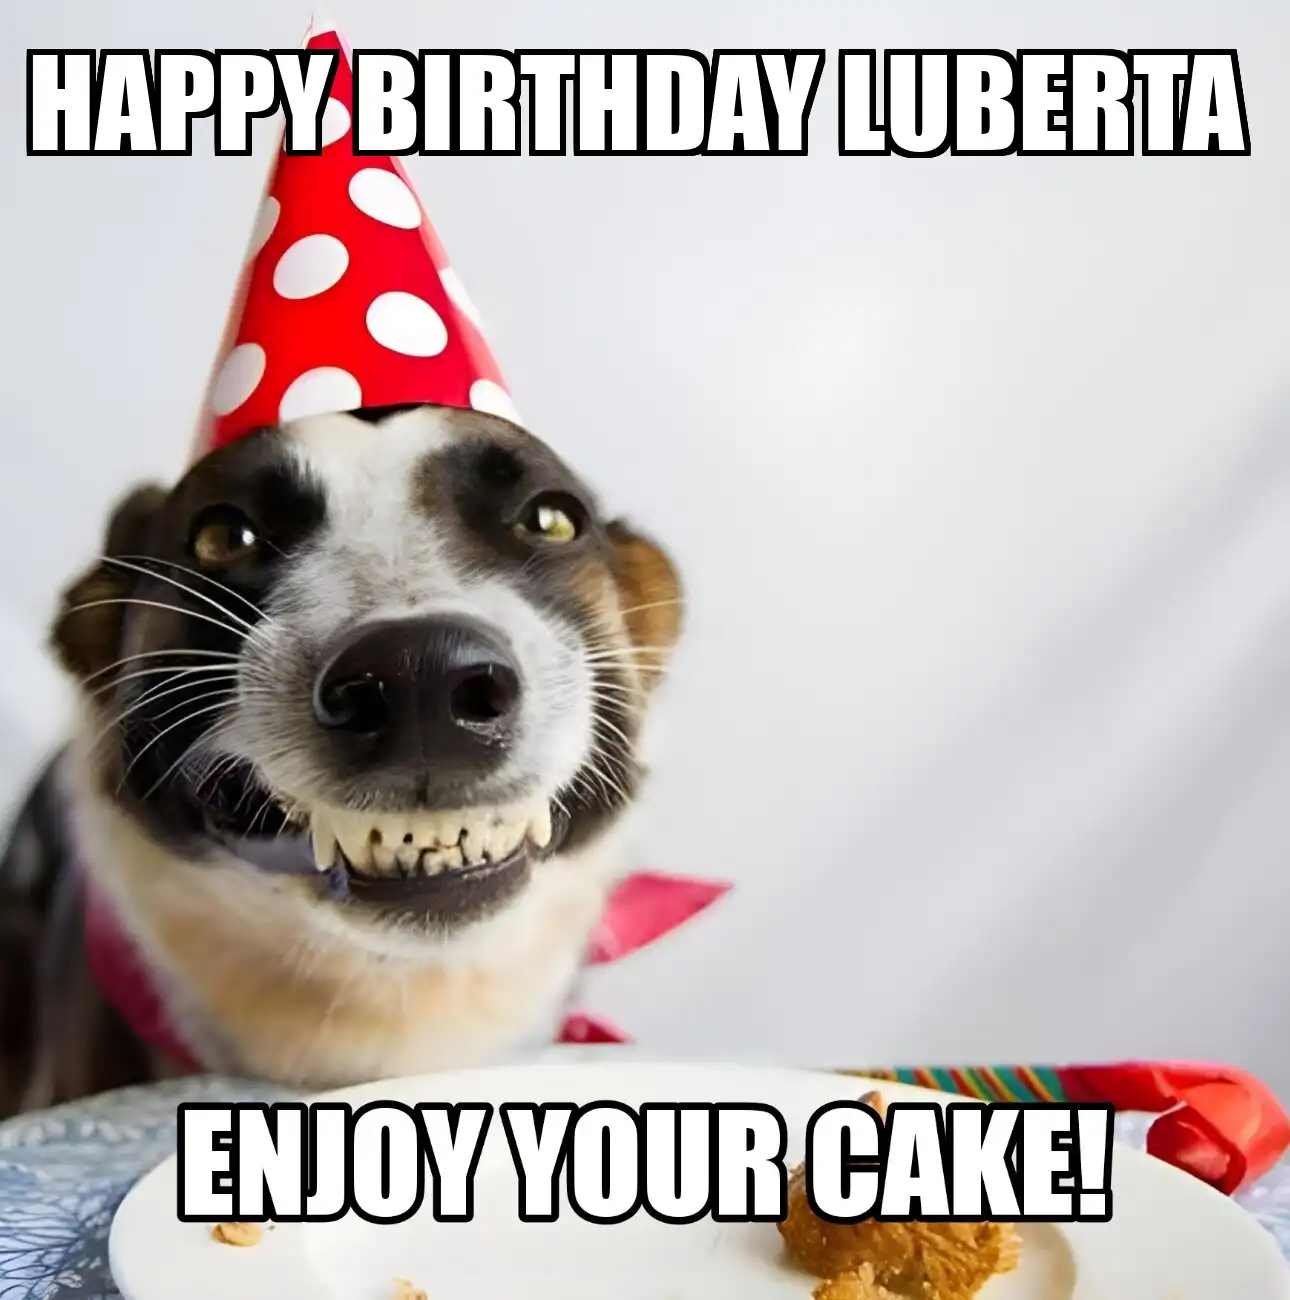 Happy Birthday Luberta Enjoy Your Cake Dog Meme